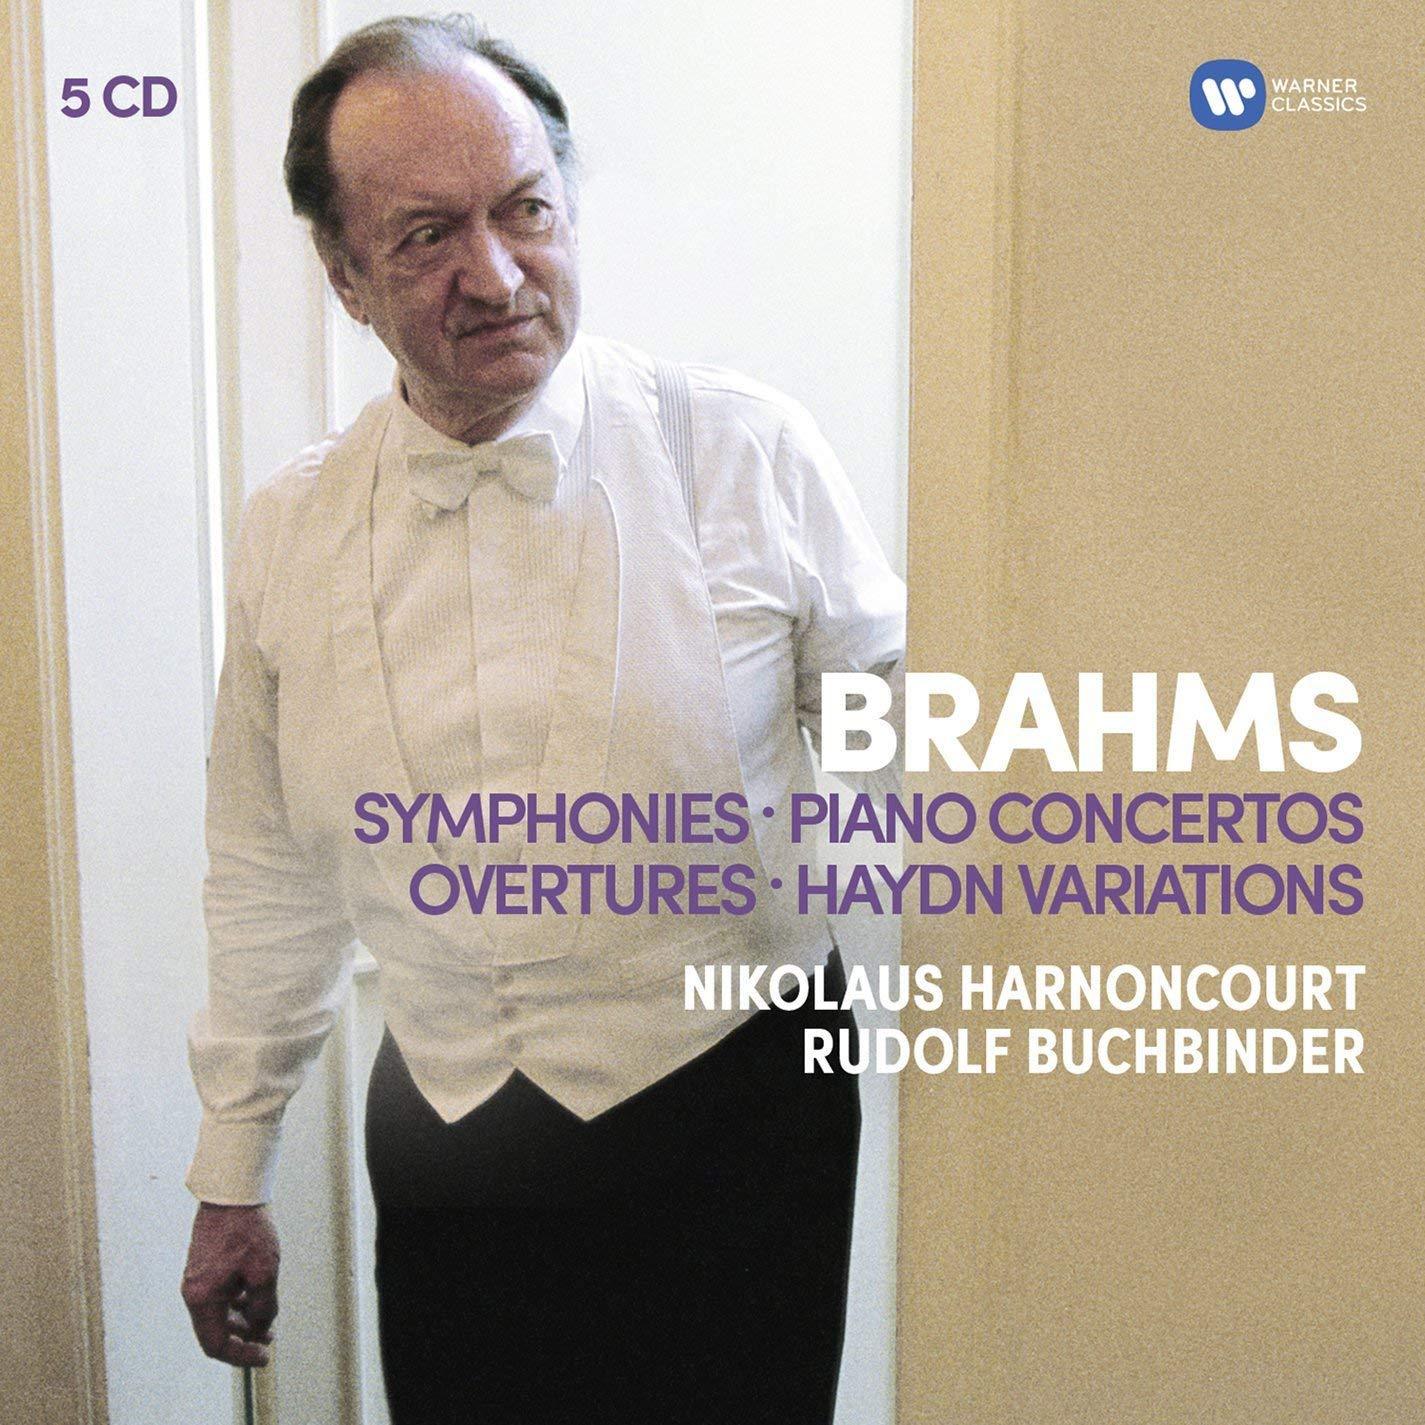 Brahms: Symphonies, Overtures, Haydn, Variations, Piano Concertos - HARNONCOURT, BUCHBINDER, BERLIN PHILHARMONIC, CONCERTGEBOUW (5 CDS)